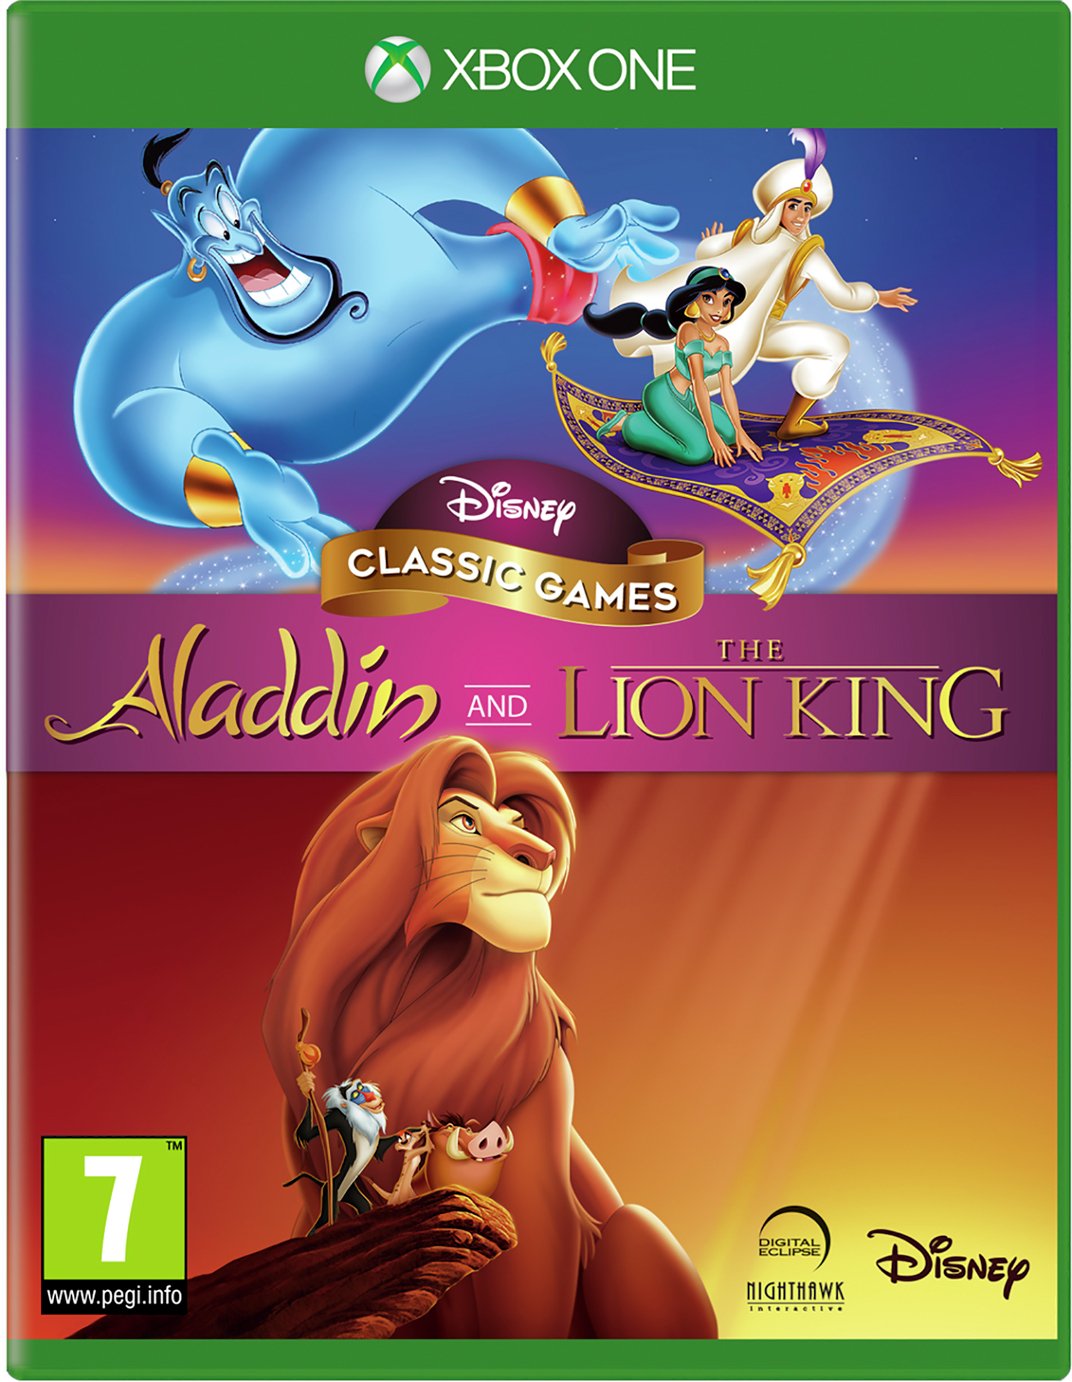 Disney's Aladdin & The Lion King Xbox One Game